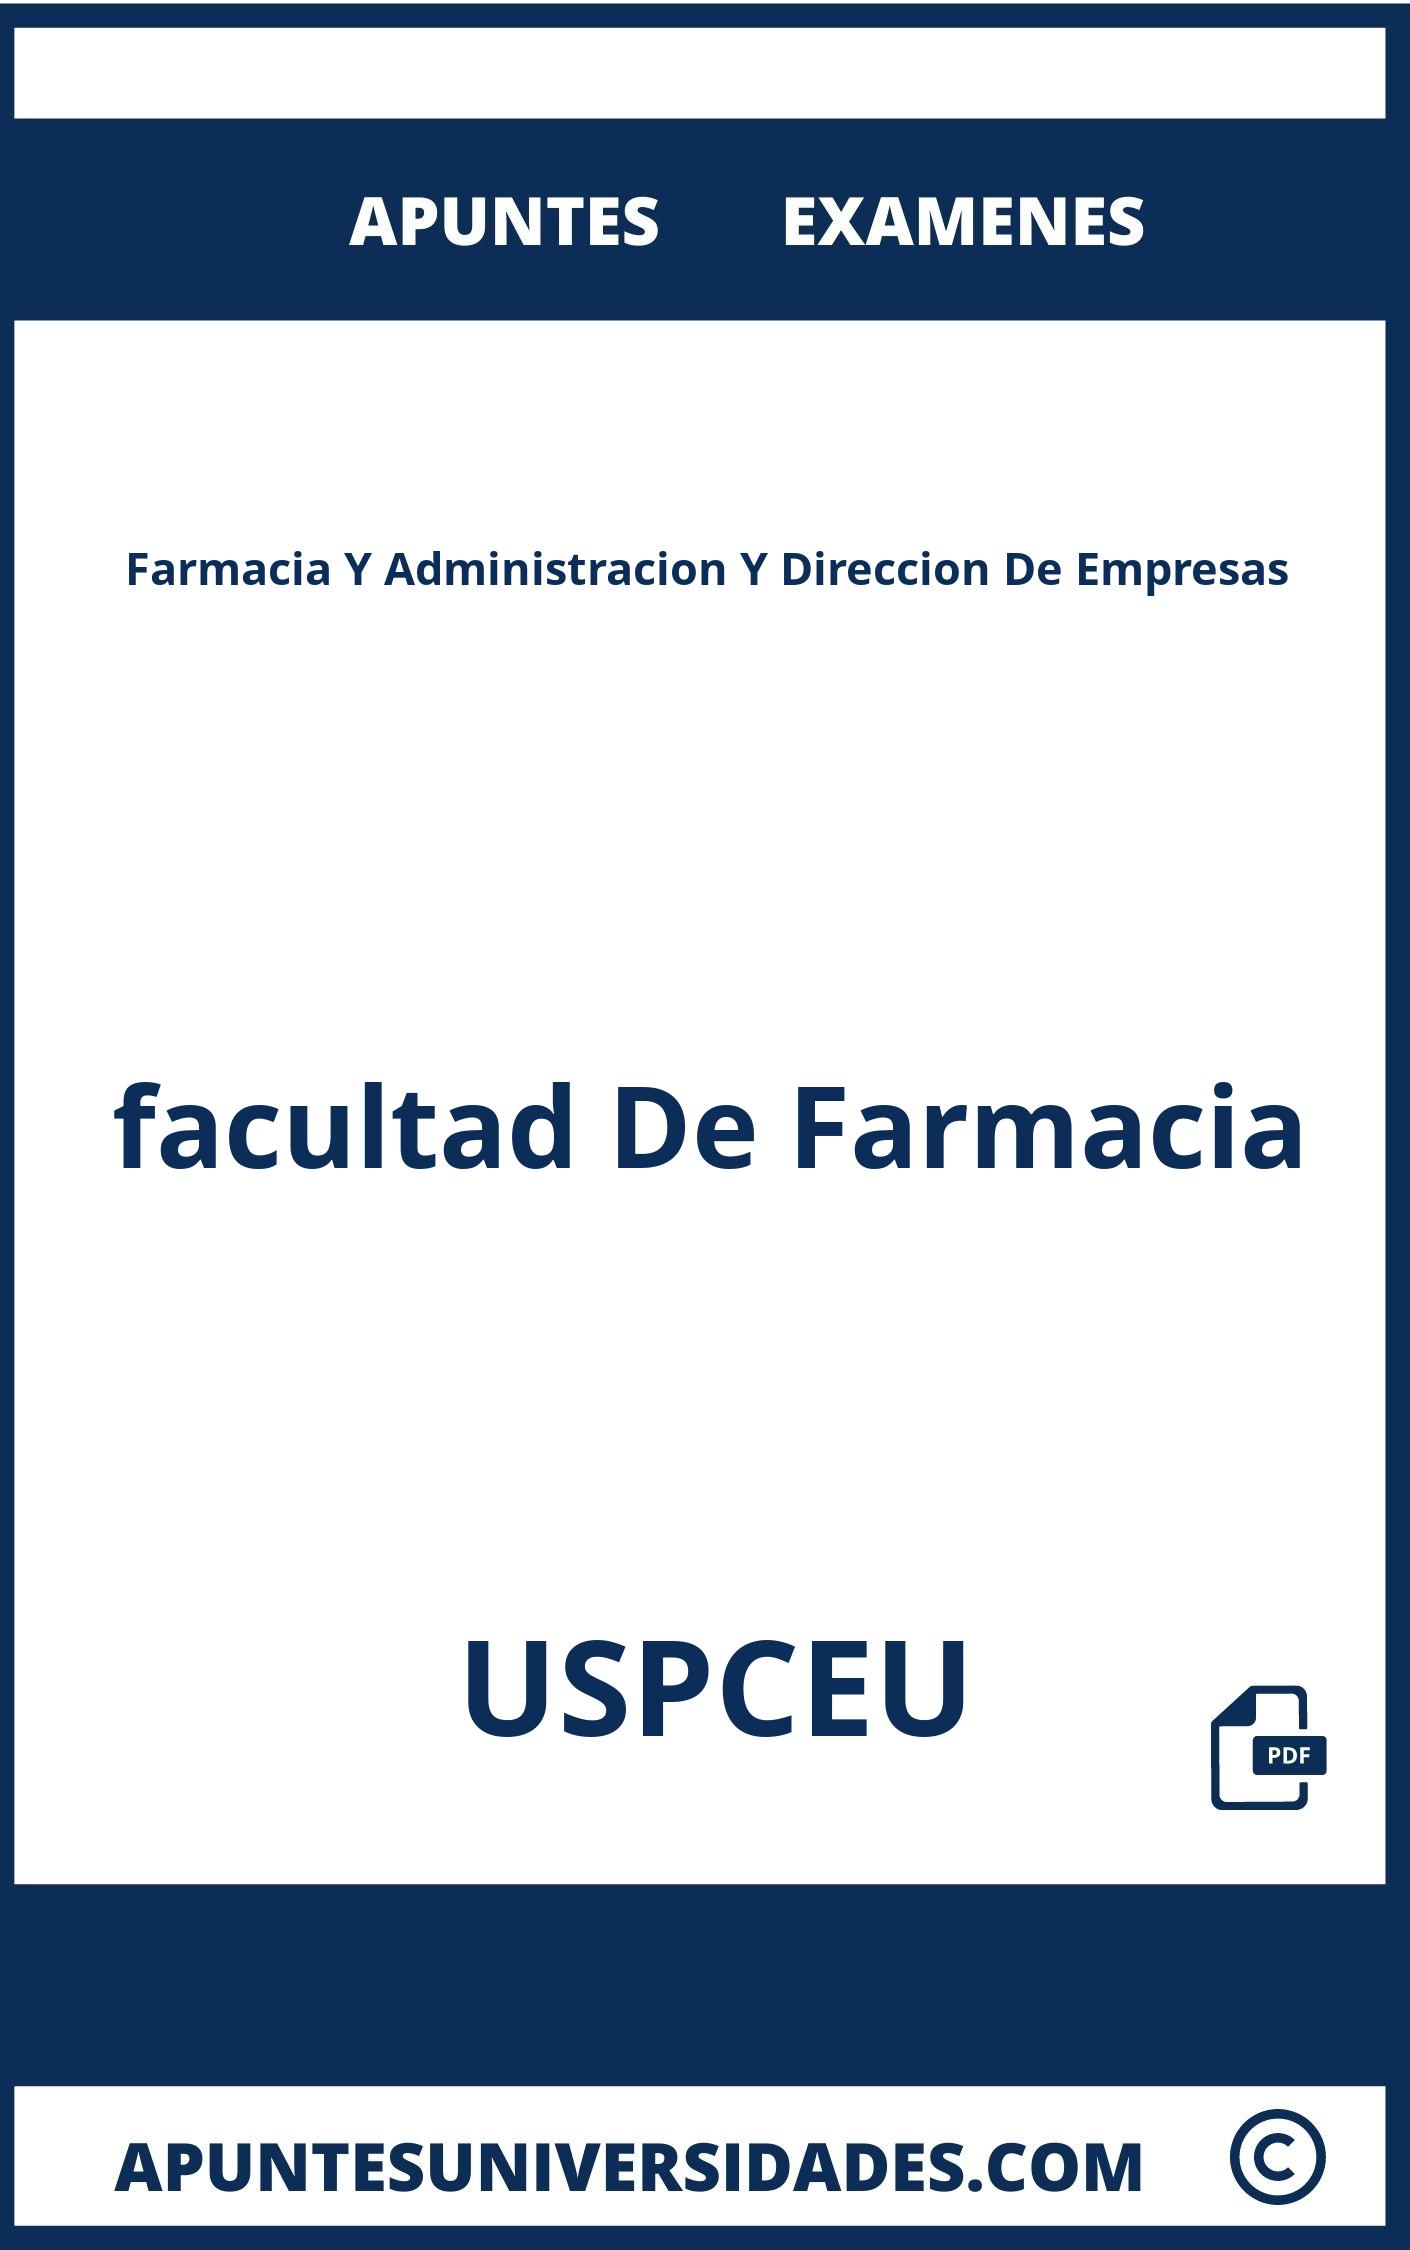 Examenes Apuntes Farmacia Y Administracion Y Direccion De Empresas USPCEU